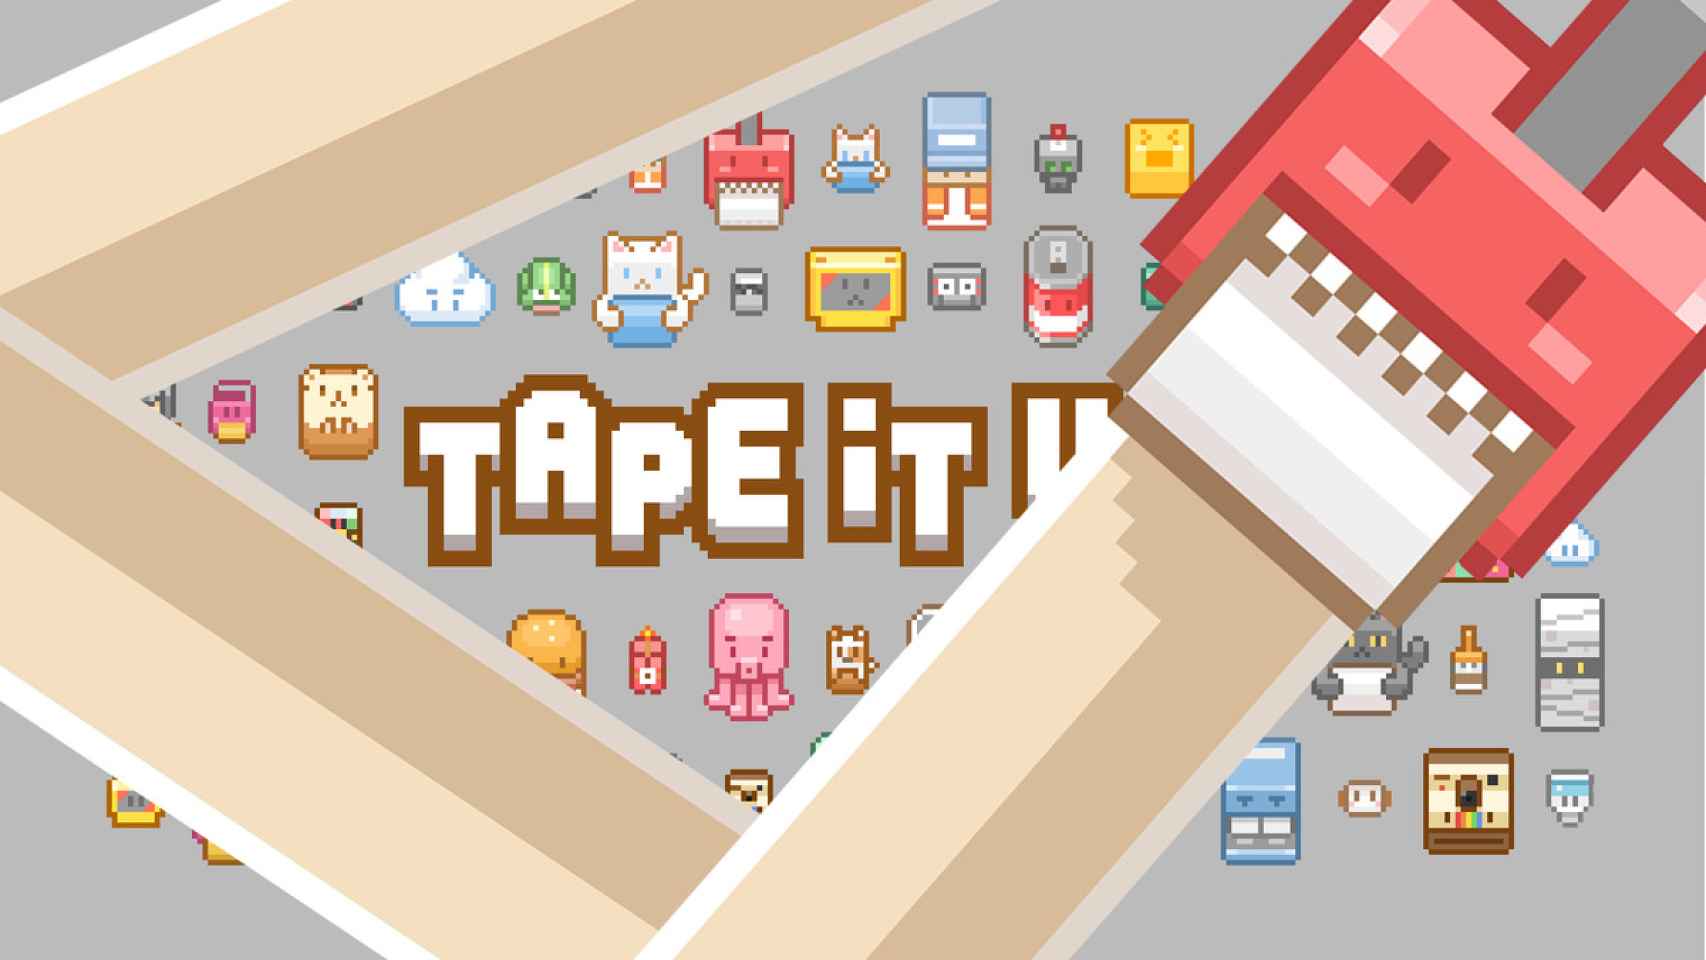 Tape it Up! Un juego adorable, sencillo y muy adictivo